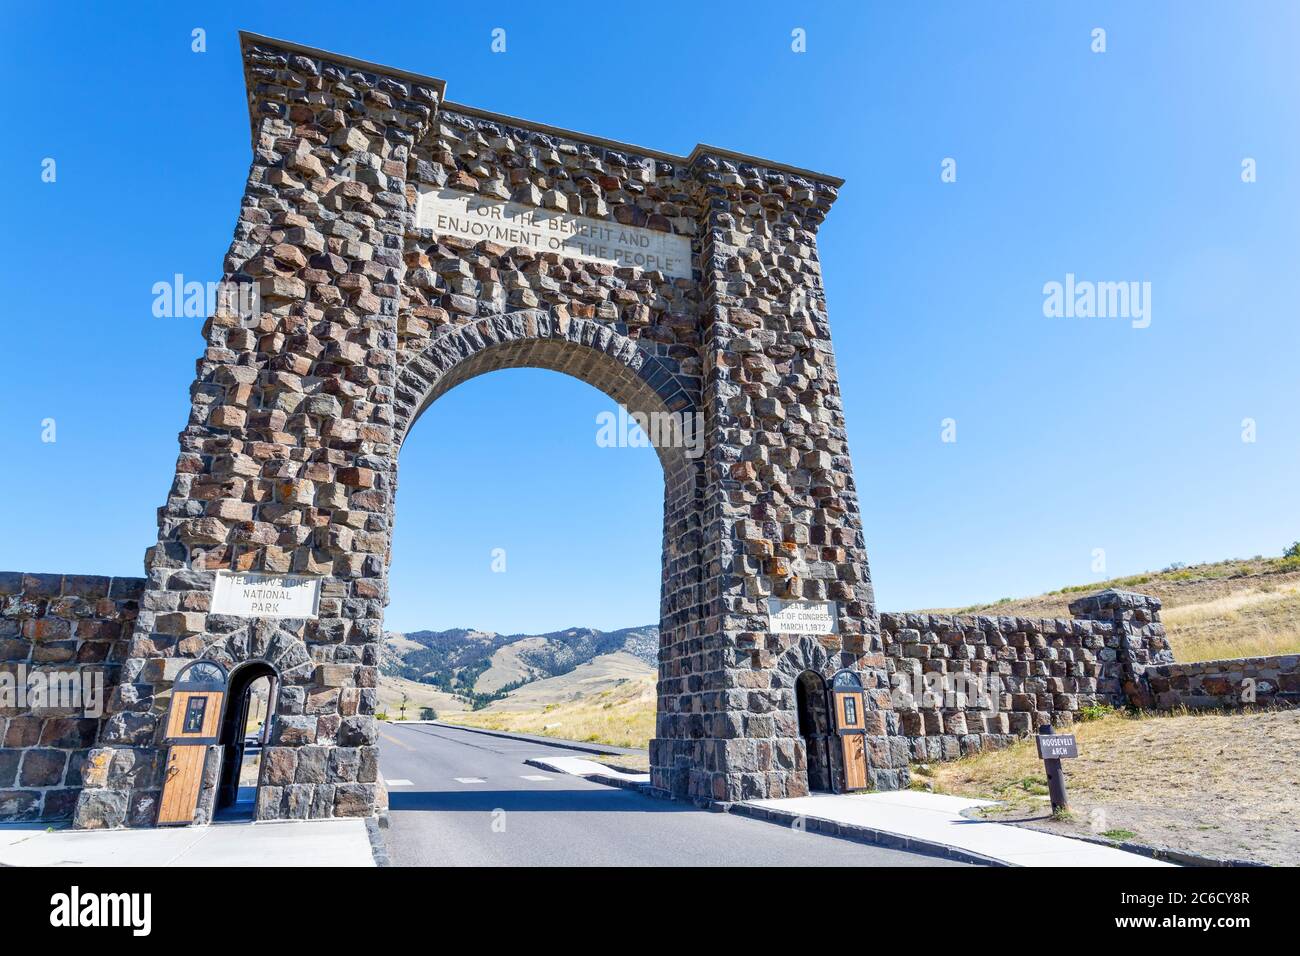 Vue à angle bas de l'historique Roosevelt Arch à l'entrée nord du parc national de Yellowstone à Gardiner, Montana. Banque D'Images